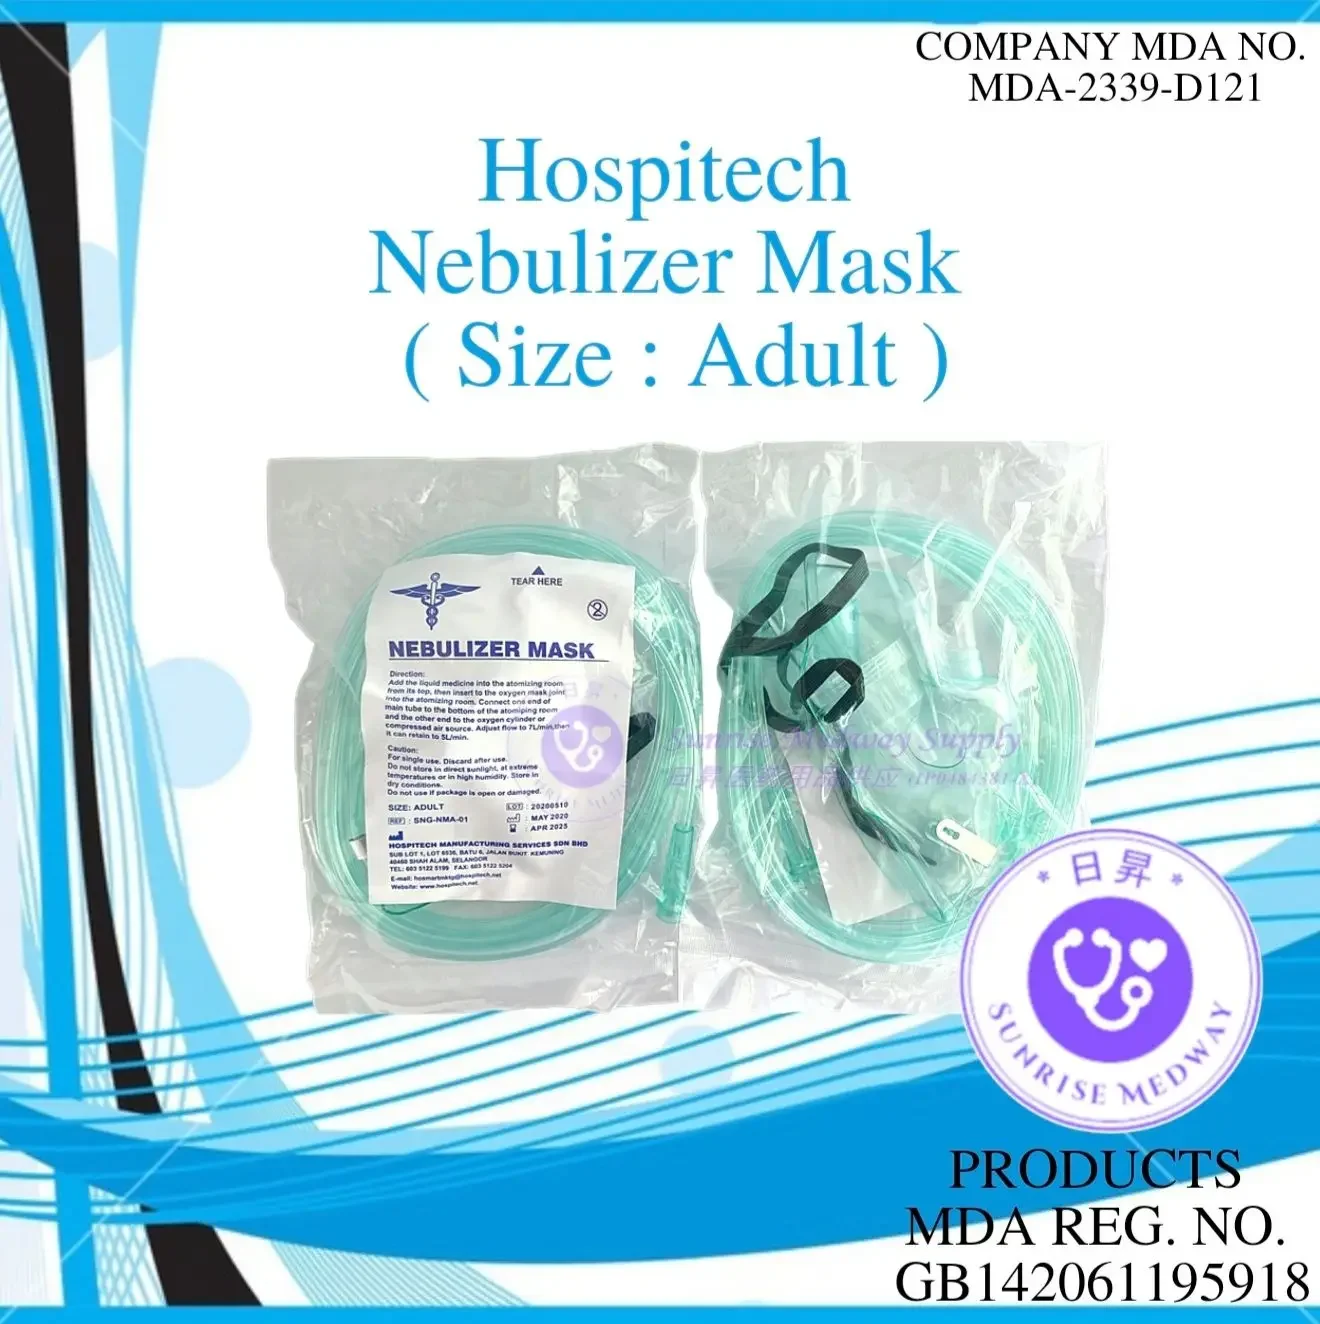 Hospitech Nebulizer Mask, Adult, 1 pc/pkt